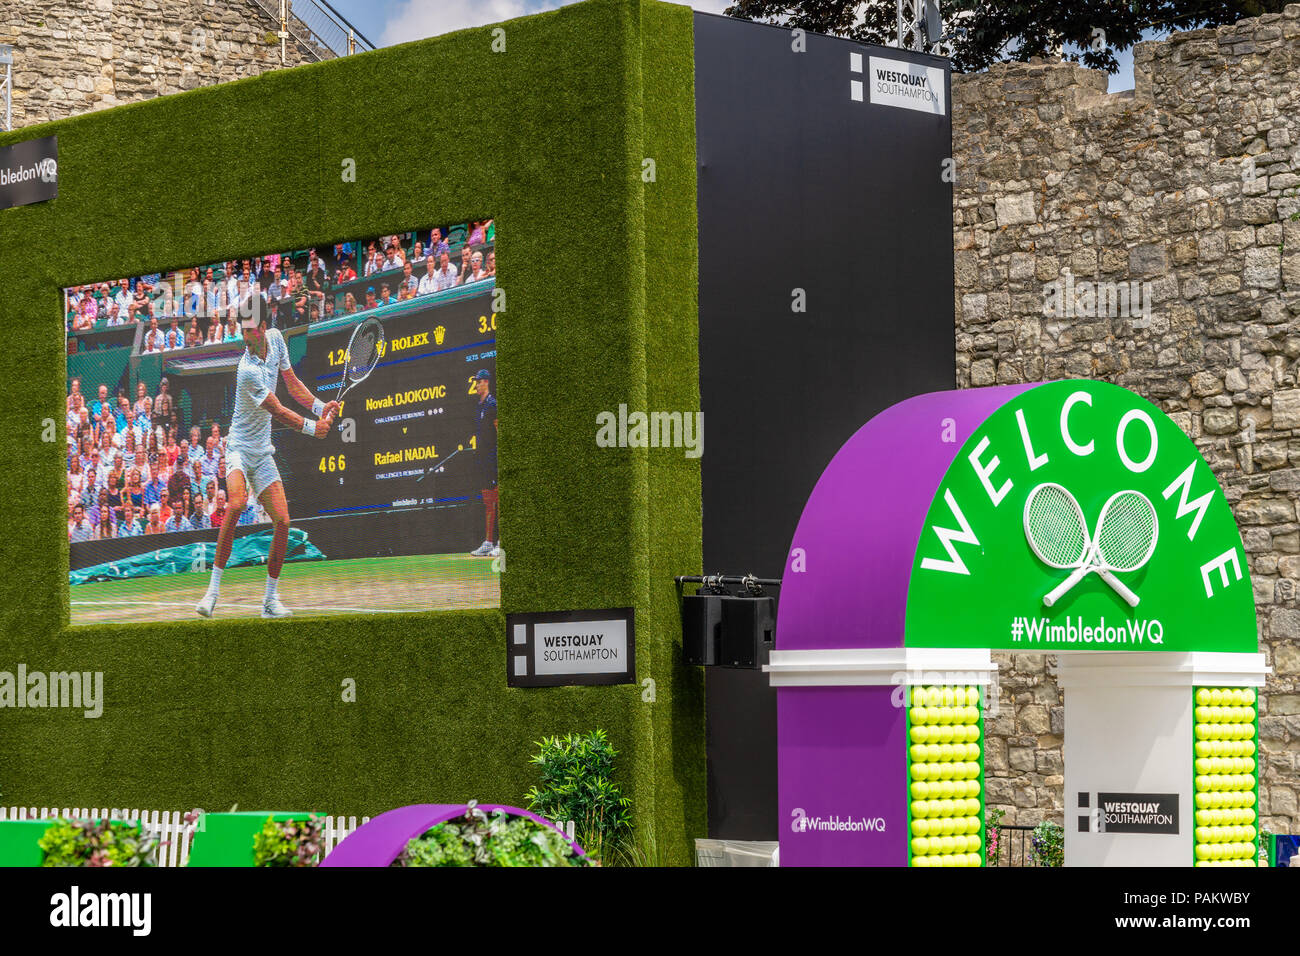 Gran pantalla de visualización pública de Wimbledon en el Westquay explanada a lo largo de las murallas de la vieja ciudad en Southampton durante julio de 2018, Inglaterra, Reino Unido. Foto de stock